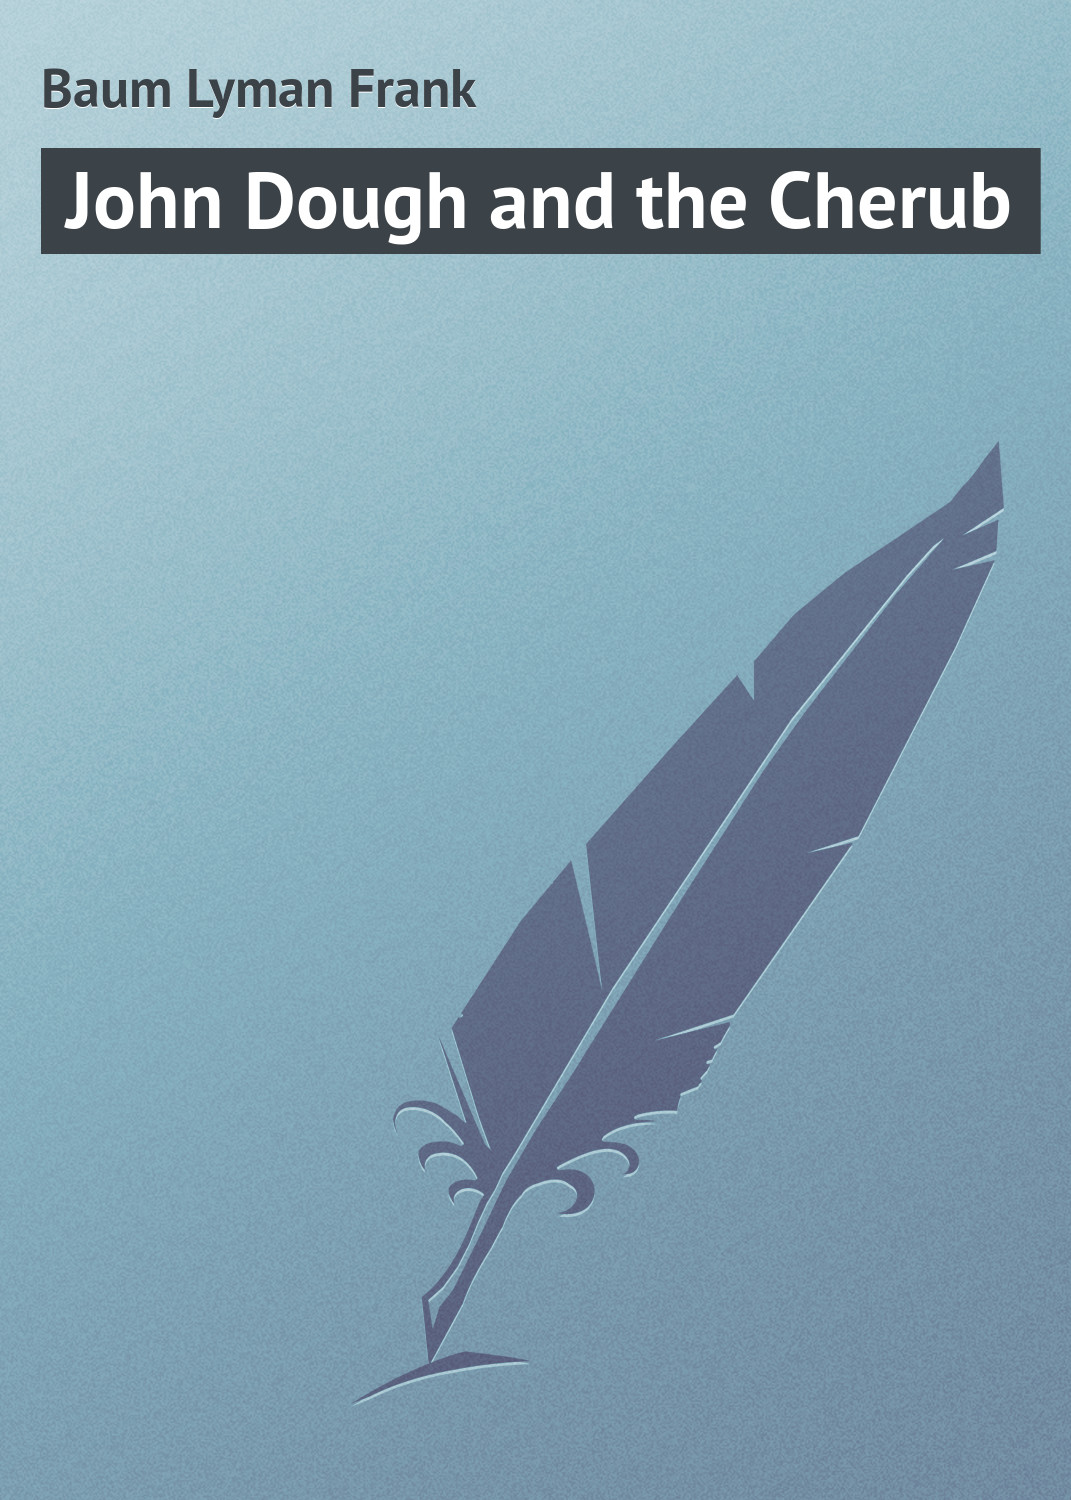 Книга John Dough and the Cherub из серии , созданная Lyman Baum, может относится к жанру Зарубежная классика. Стоимость электронной книги John Dough and the Cherub с идентификатором 23166467 составляет 5.99 руб.